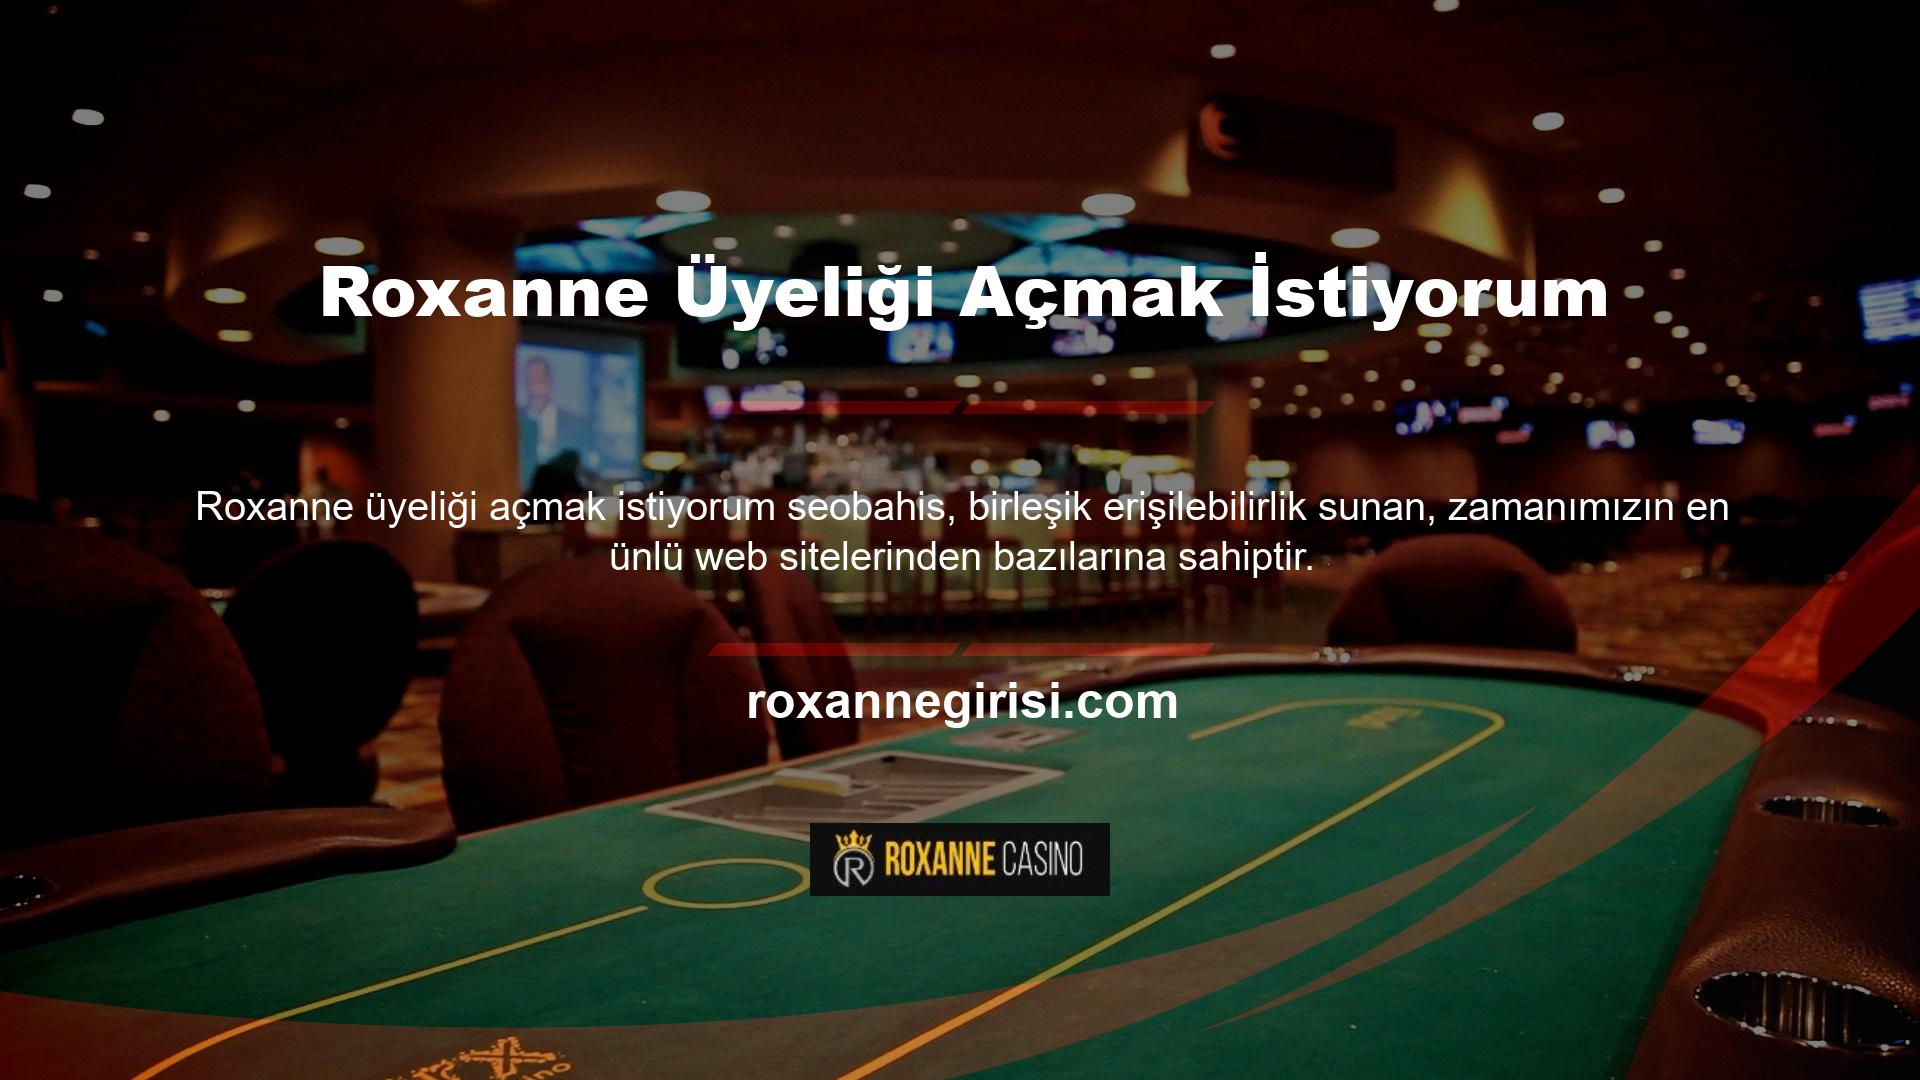 Roxanne, zamana karşı dayanıklı bir marka olarak tanımlanan en ünlü offshore casino sitelerinden biridir